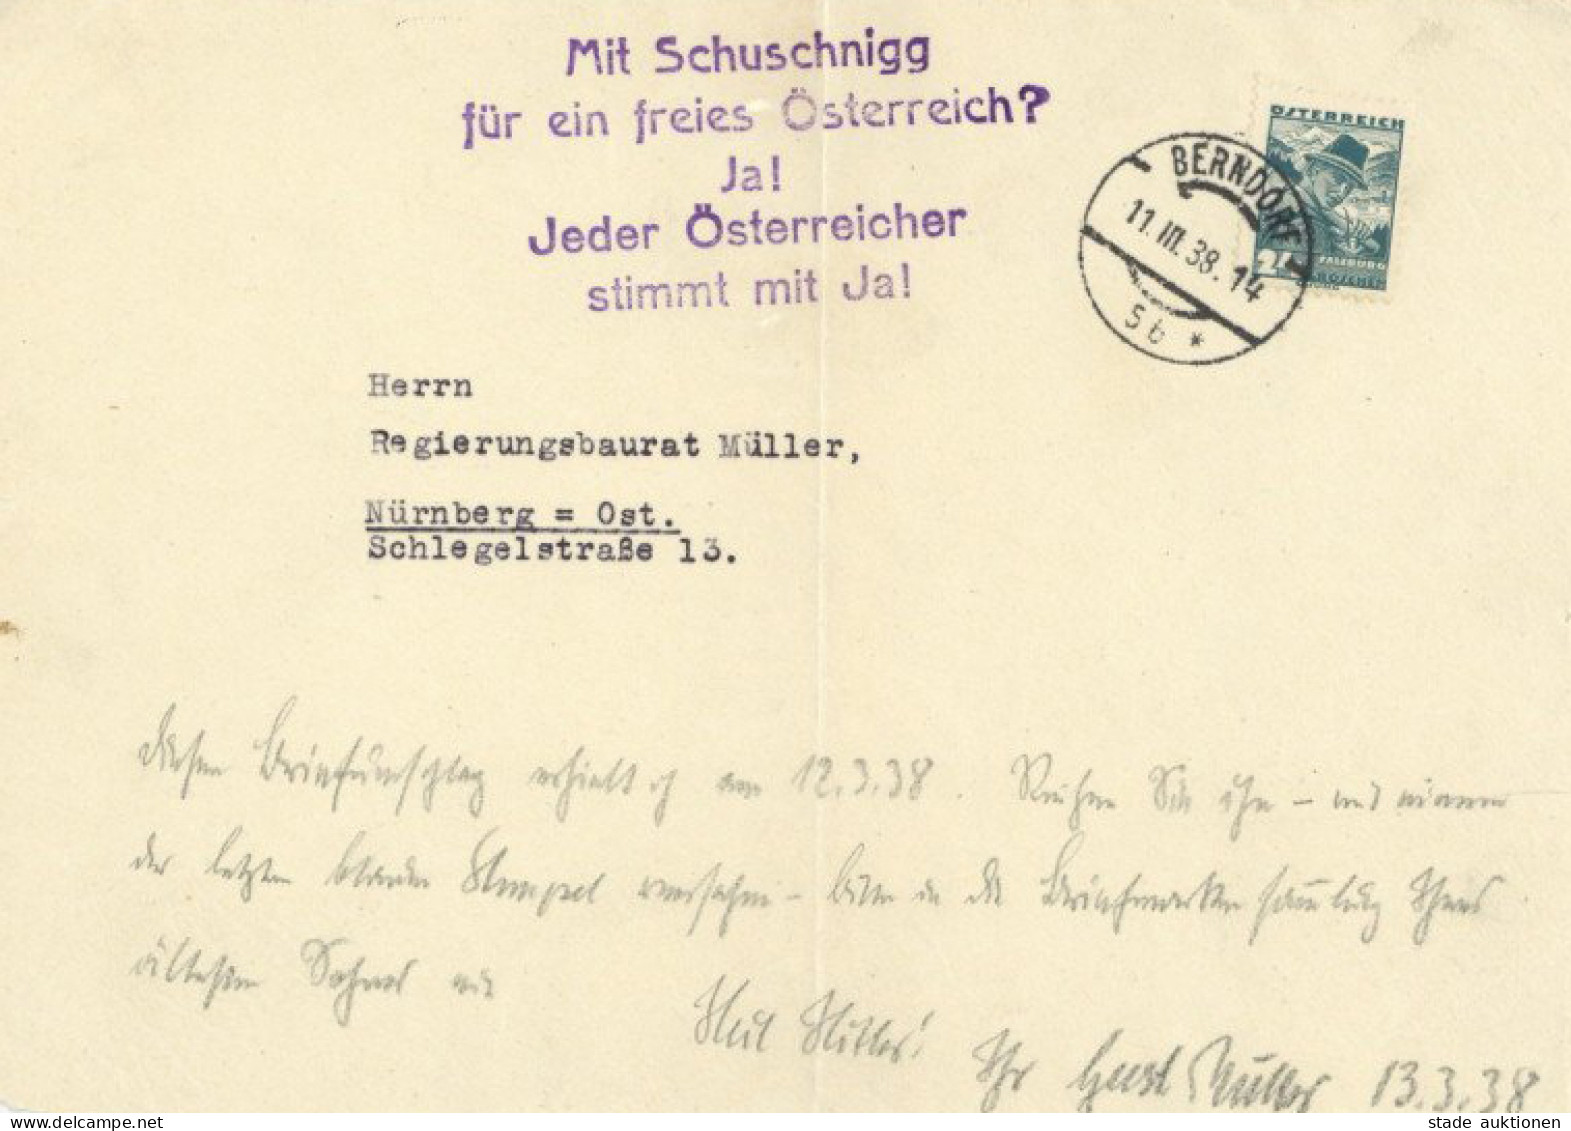 Antipropaganda WK II Österreichischer Antideutscher Propagandastempel Auf Briefvorderseite Vom 11.3.1938 (Tag Des Einmar - Weltkrieg 1939-45